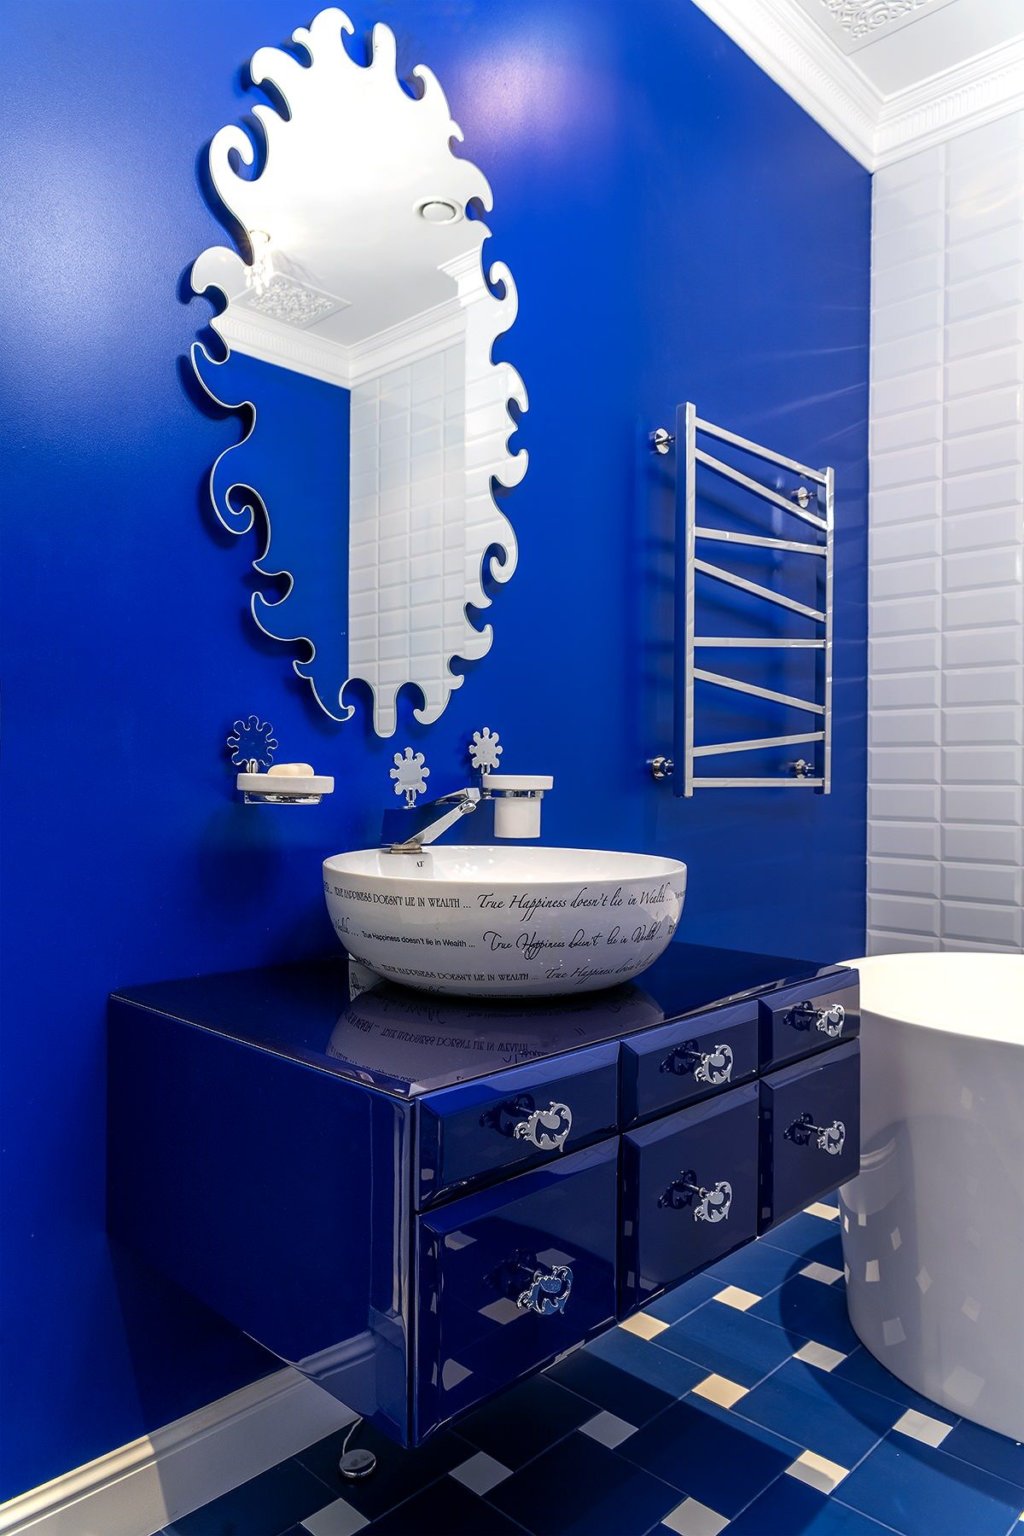 Hình ảnh phòng tắm màu xanh hải quân chủ đạo, gương soi chạm khắc tinh xảo